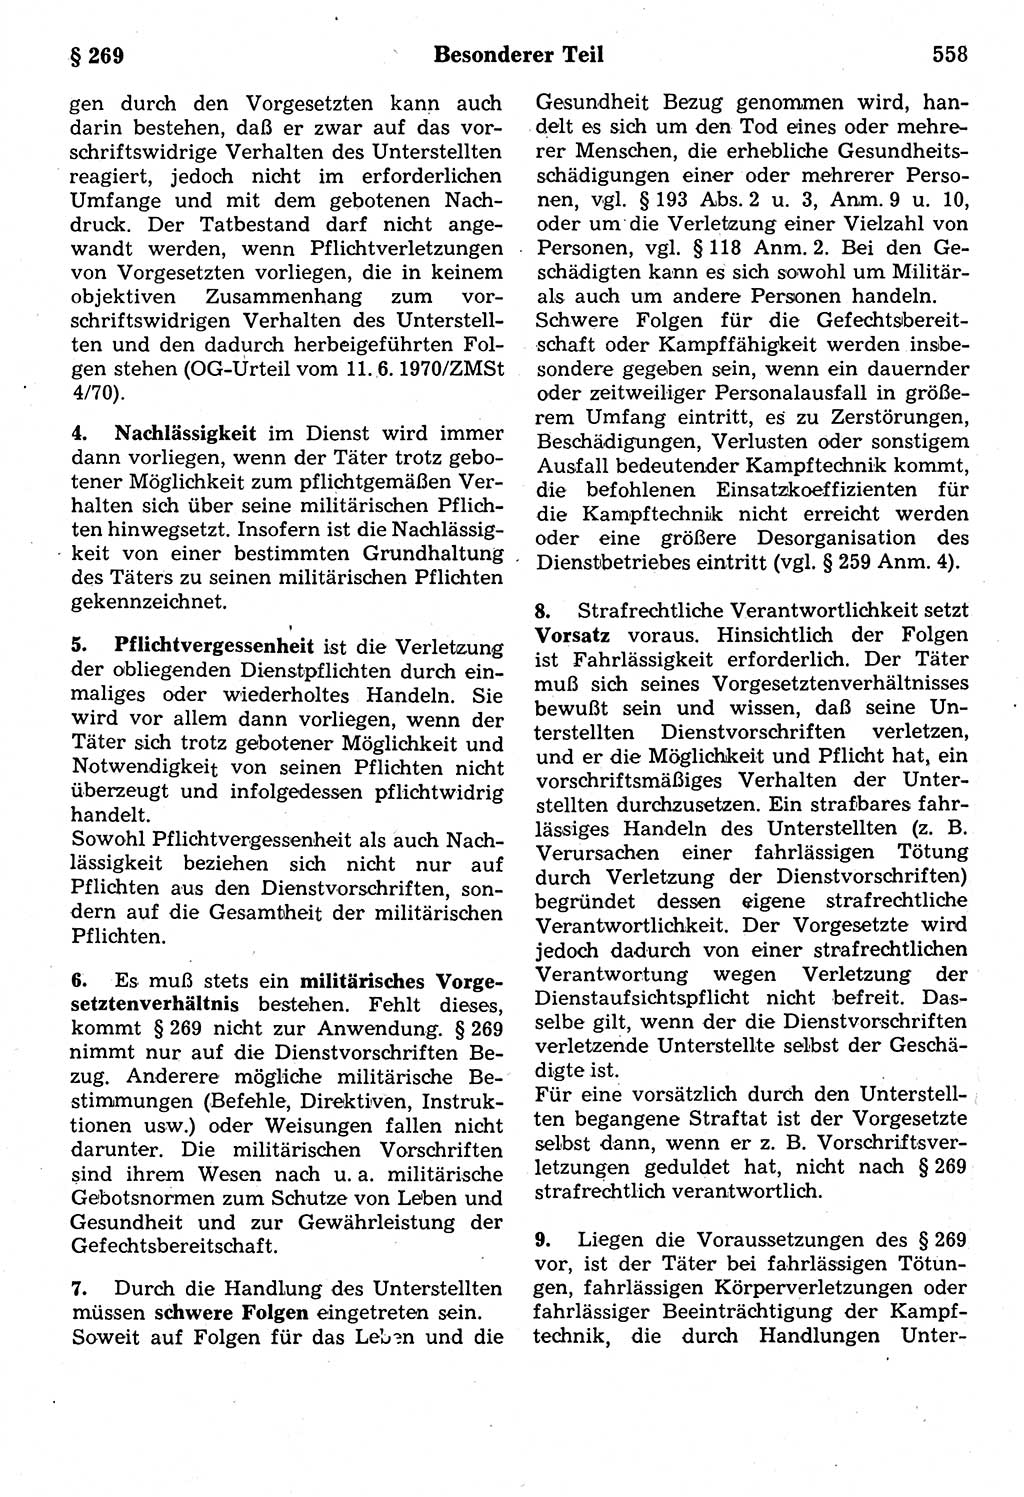 Strafrecht der Deutschen Demokratischen Republik (DDR), Kommentar zum Strafgesetzbuch (StGB) 1987, Seite 558 (Strafr. DDR Komm. StGB 1987, S. 558)